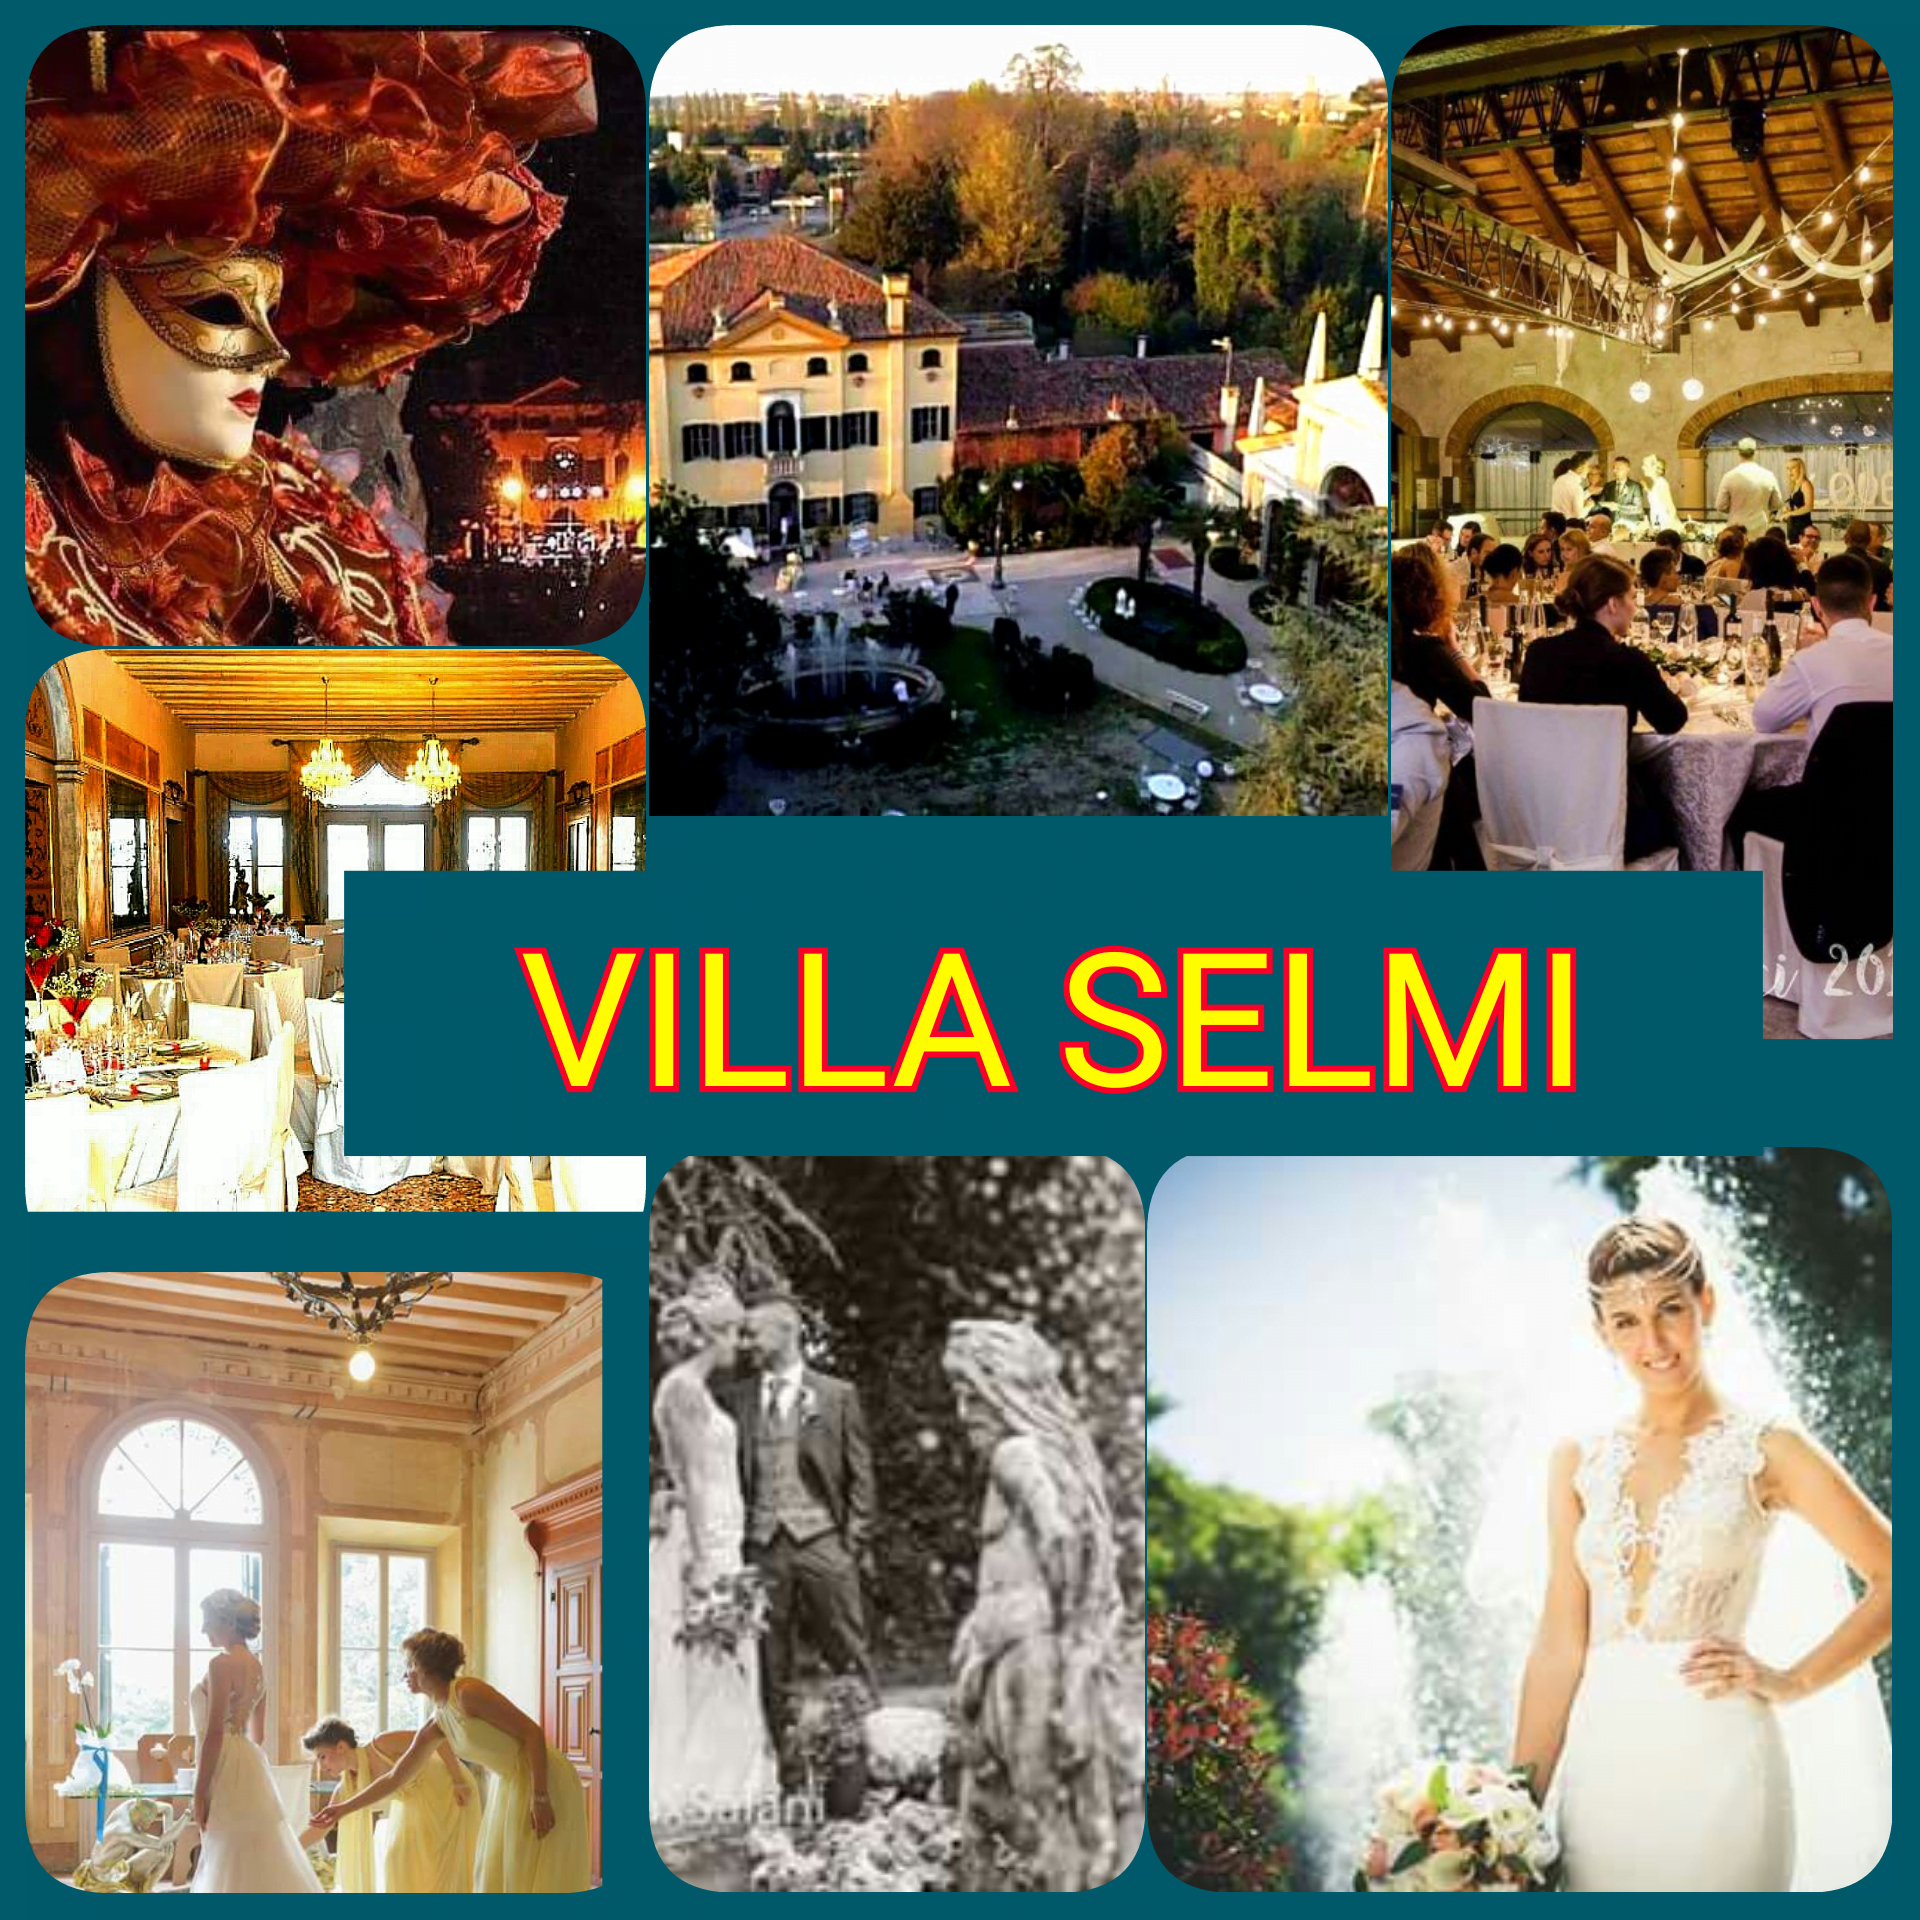 EXCLUSIVE ITALY WEDDINGS - VILLA SELMI LOCATION